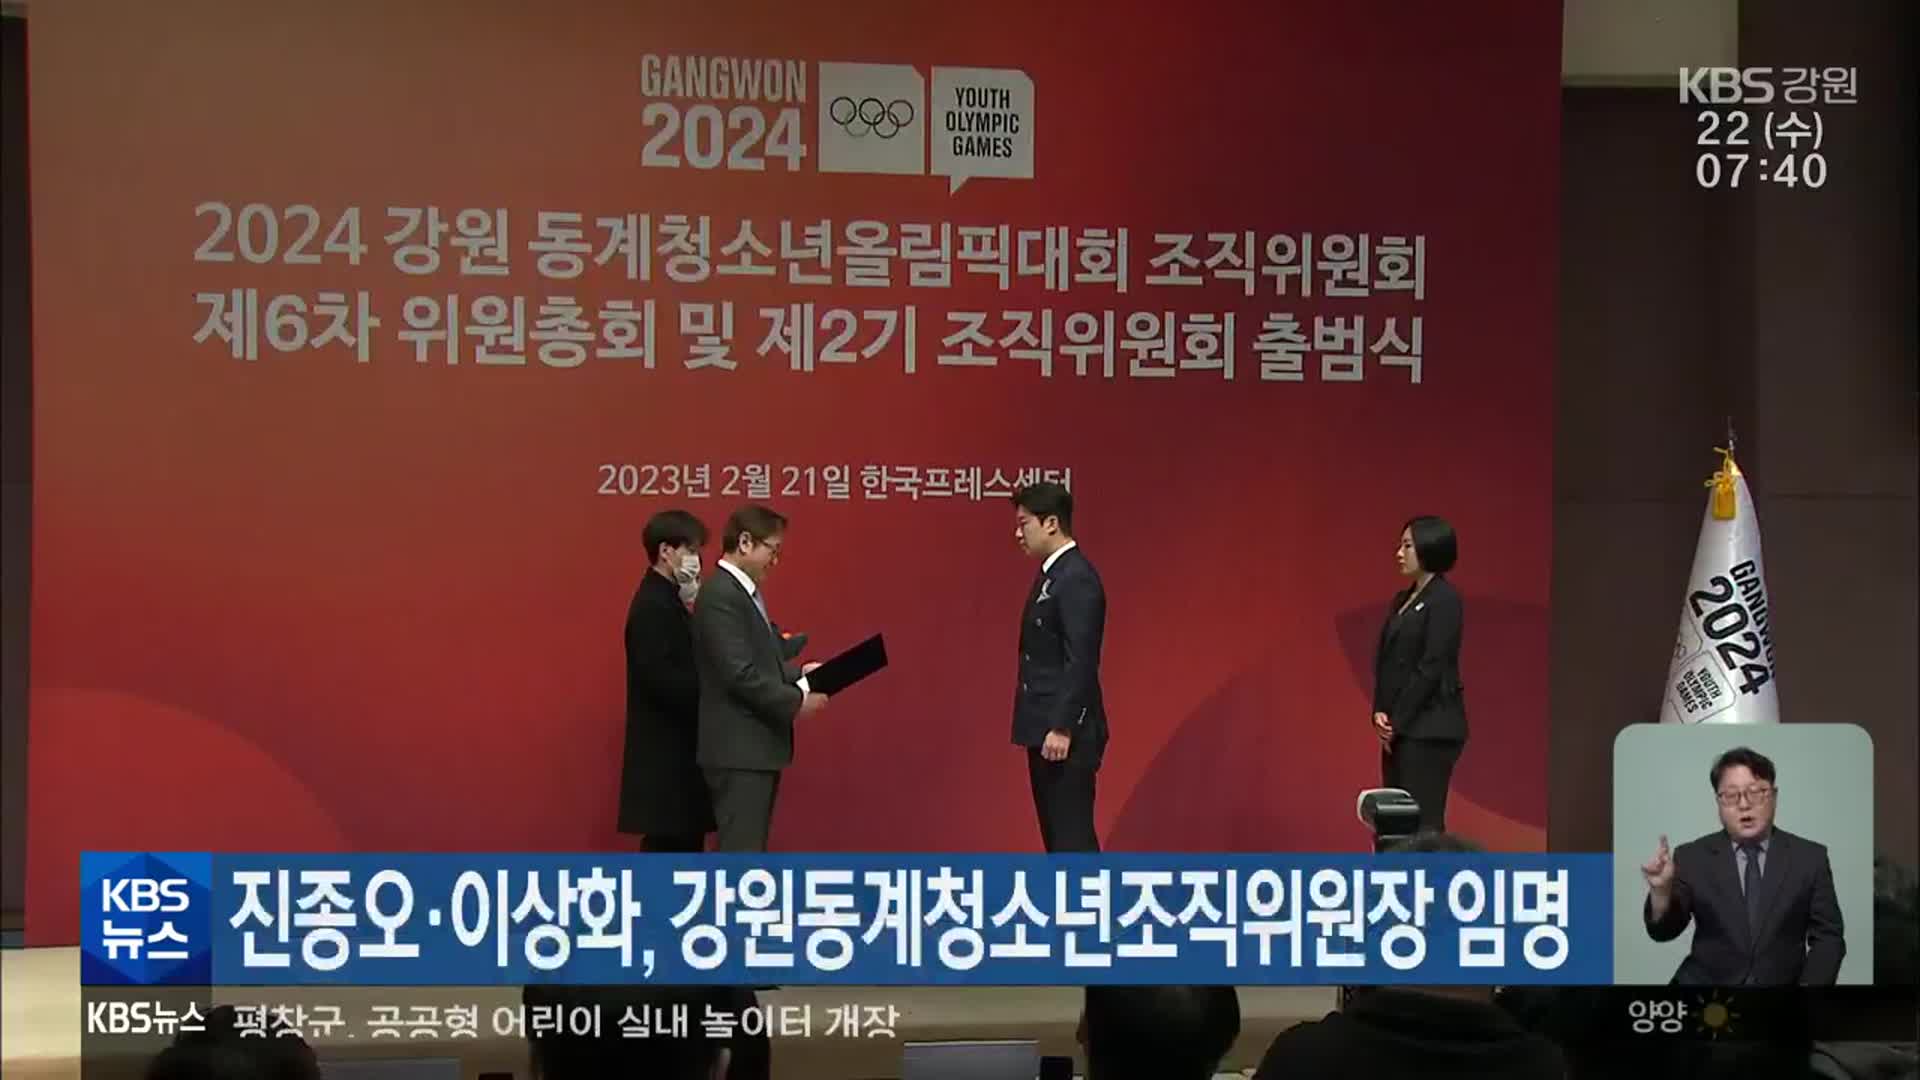 진종오·이상화, 강원동계청소년조직위원장 임명